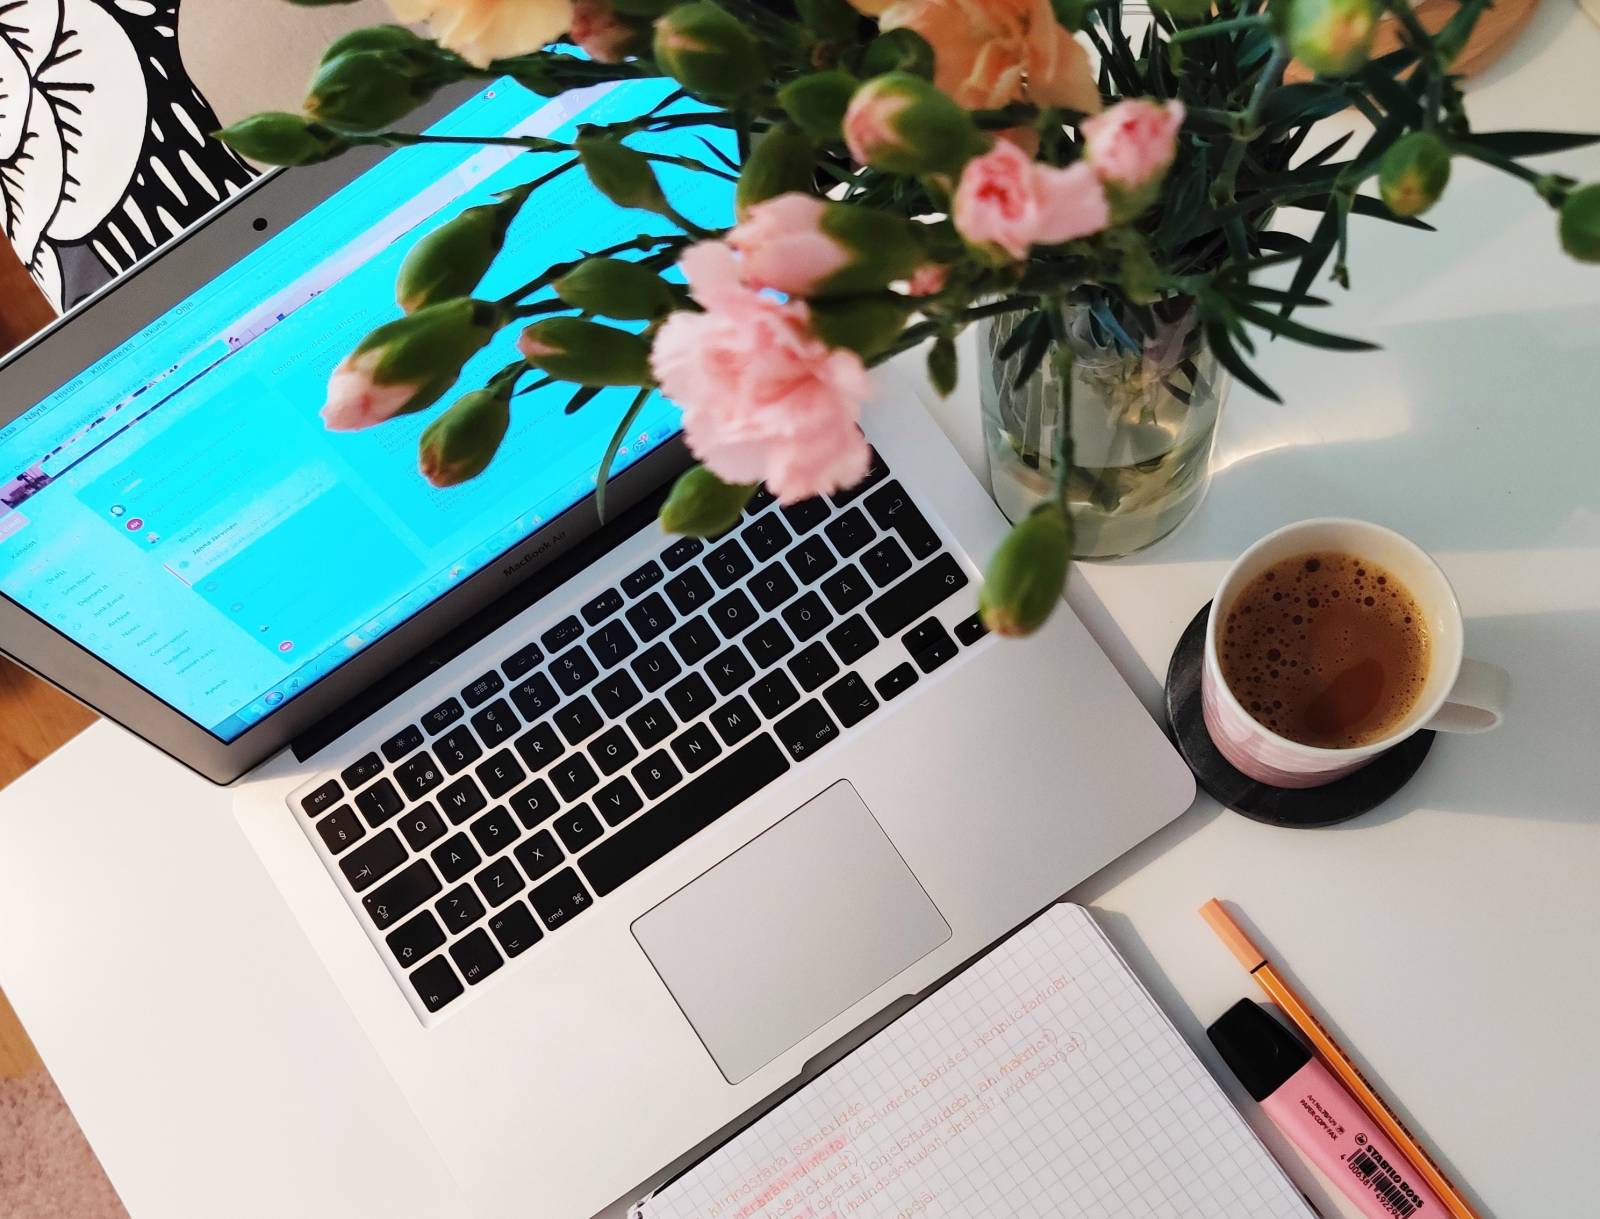 Kirjoituspöydällä värikäs kukkakimppu, kuppi kahvia, muistiinpanovihko, kyniä sekä kannettava tietokone.